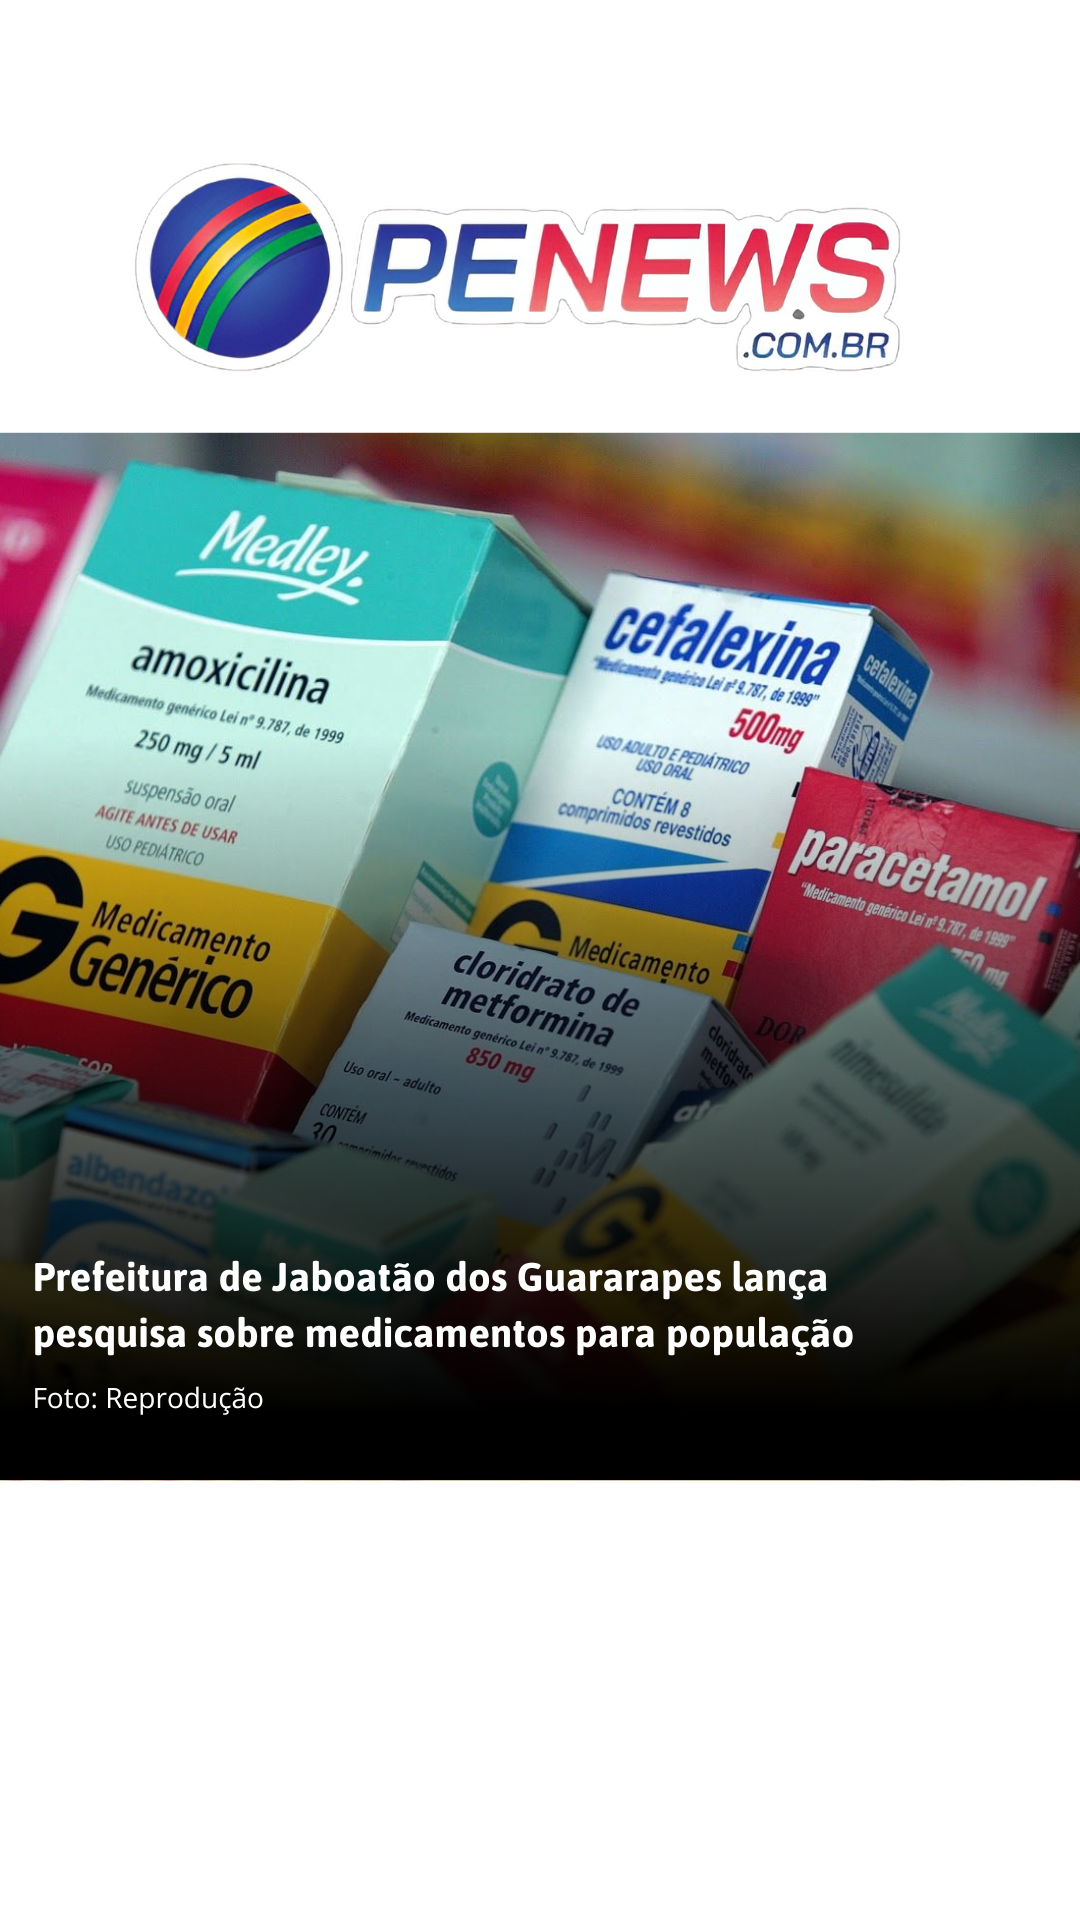  Prefeitura de Jaboatão dos Guararapes lança pesquisa sobre medicamentos para população